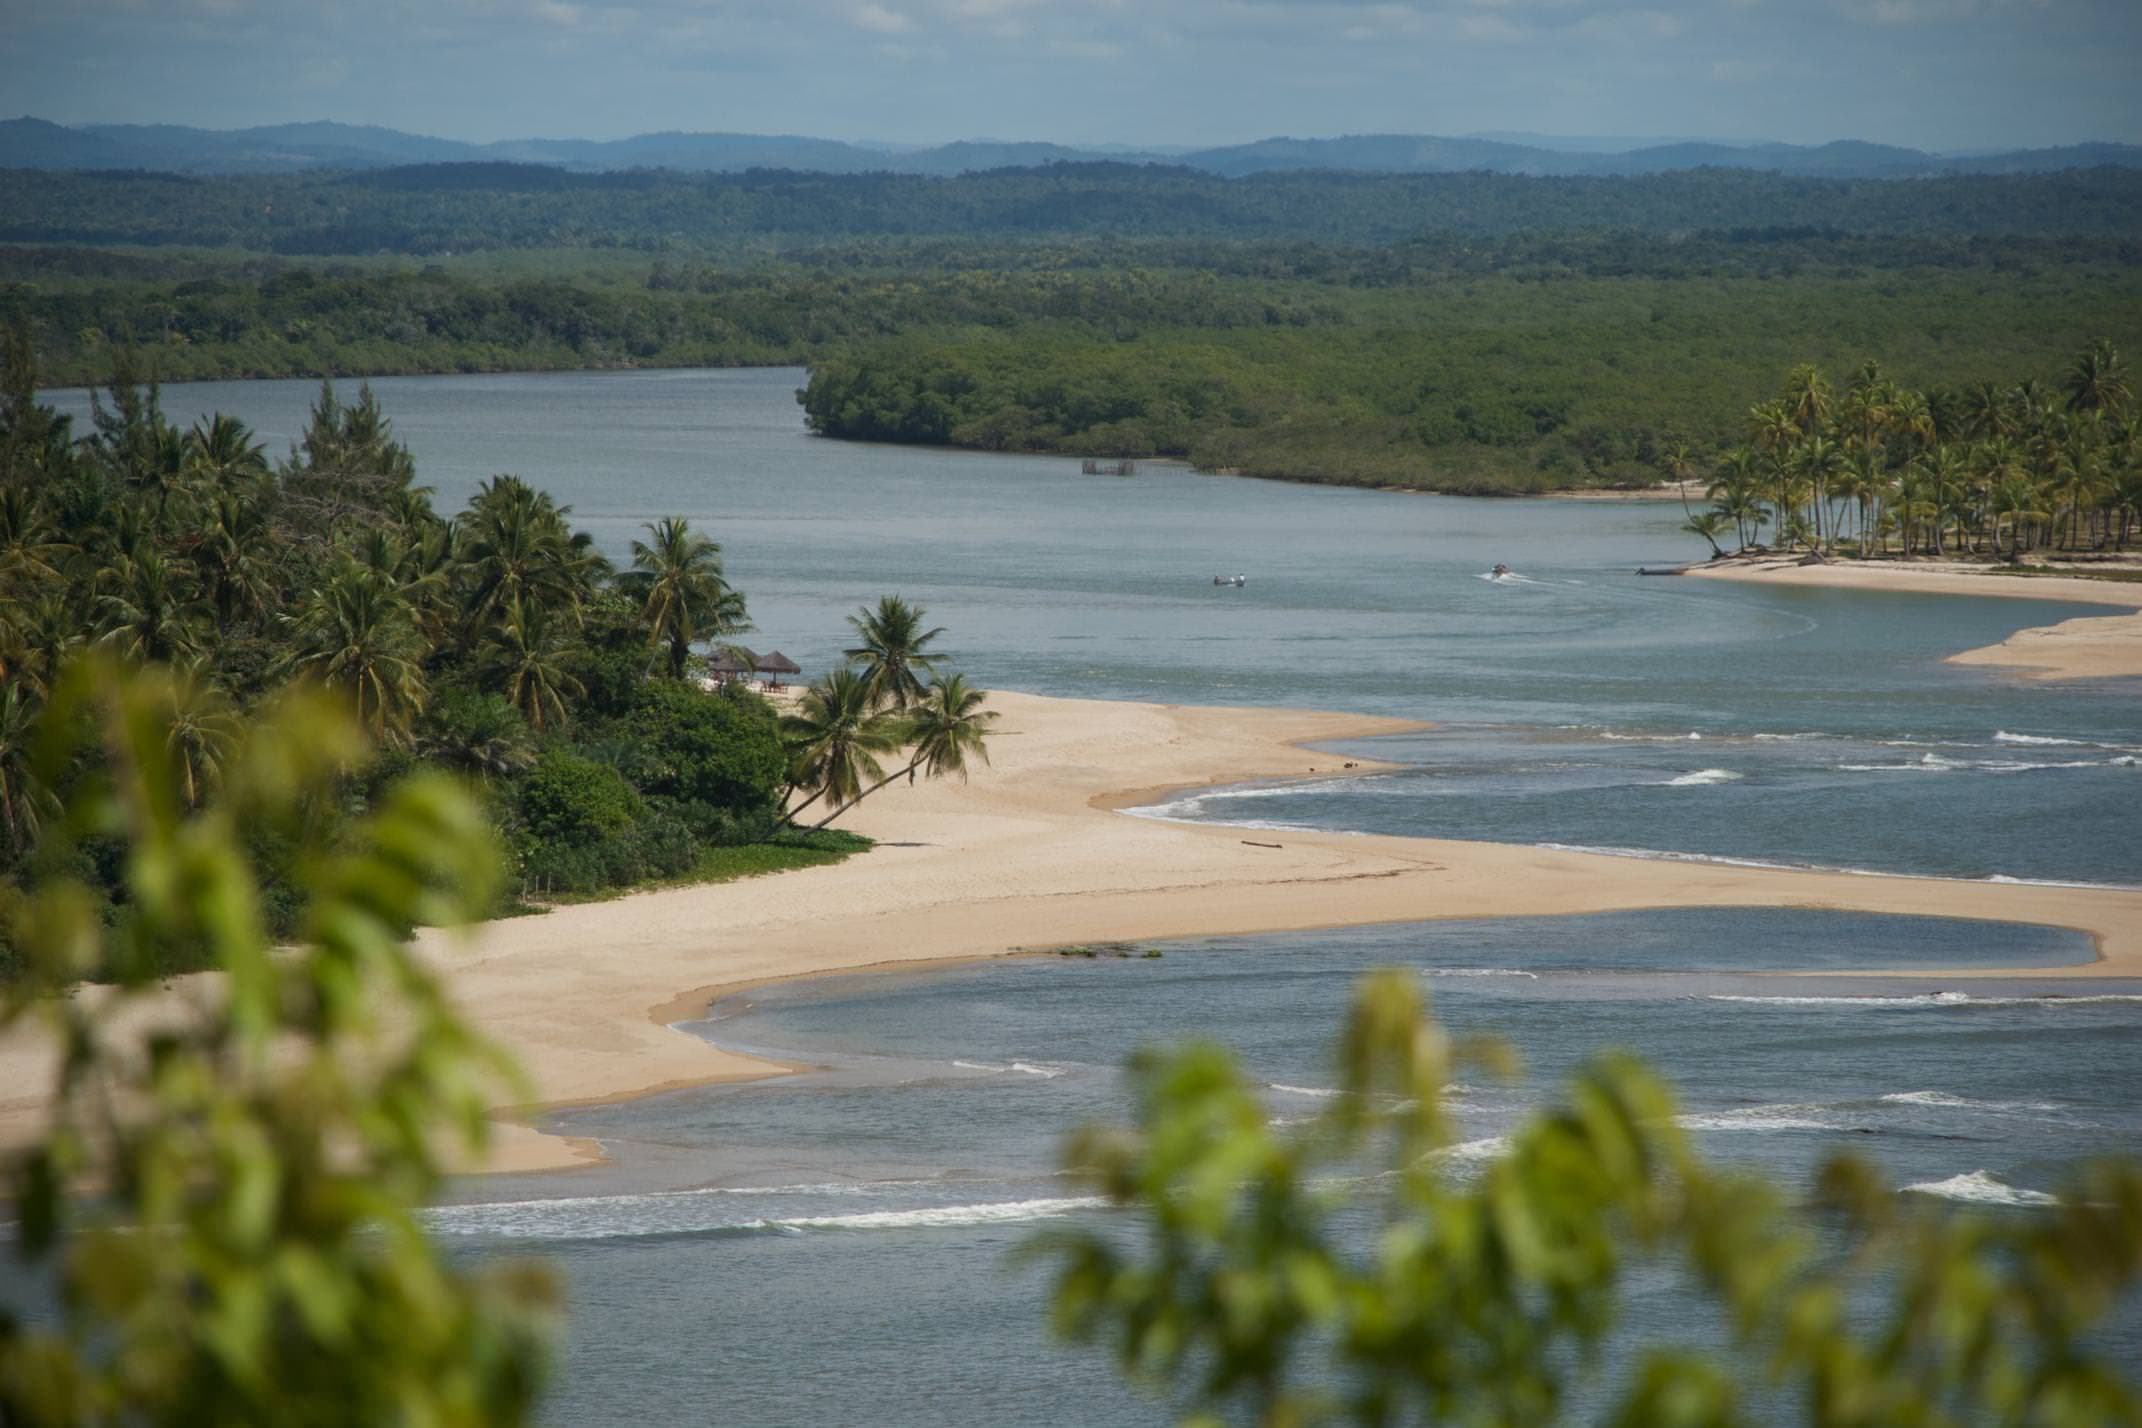 Brazil bahia boipeba island along the estuary